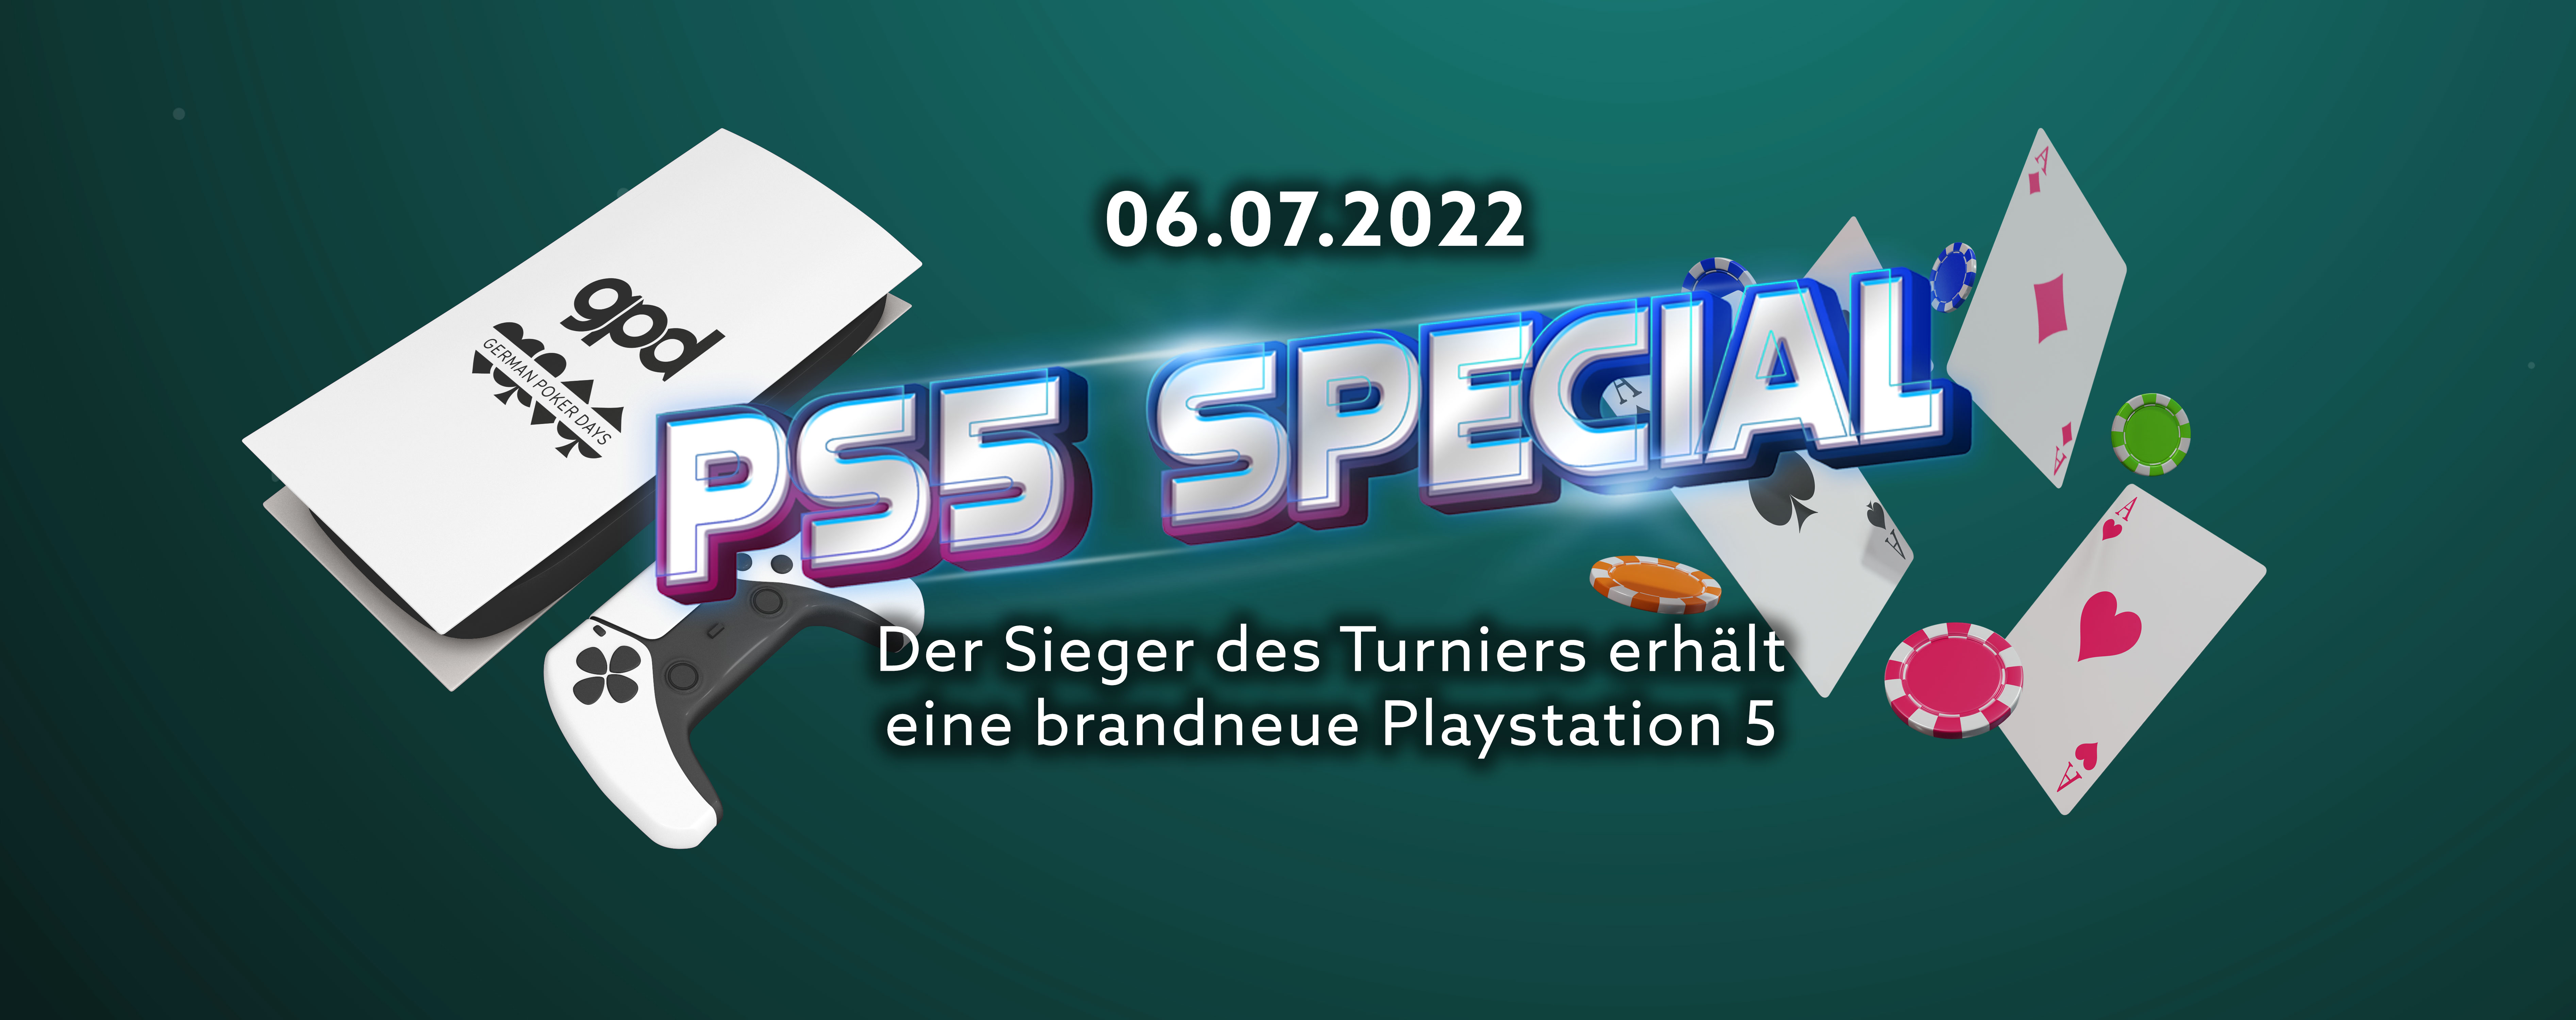 Playstation 5 Special | 06. Juli 2022